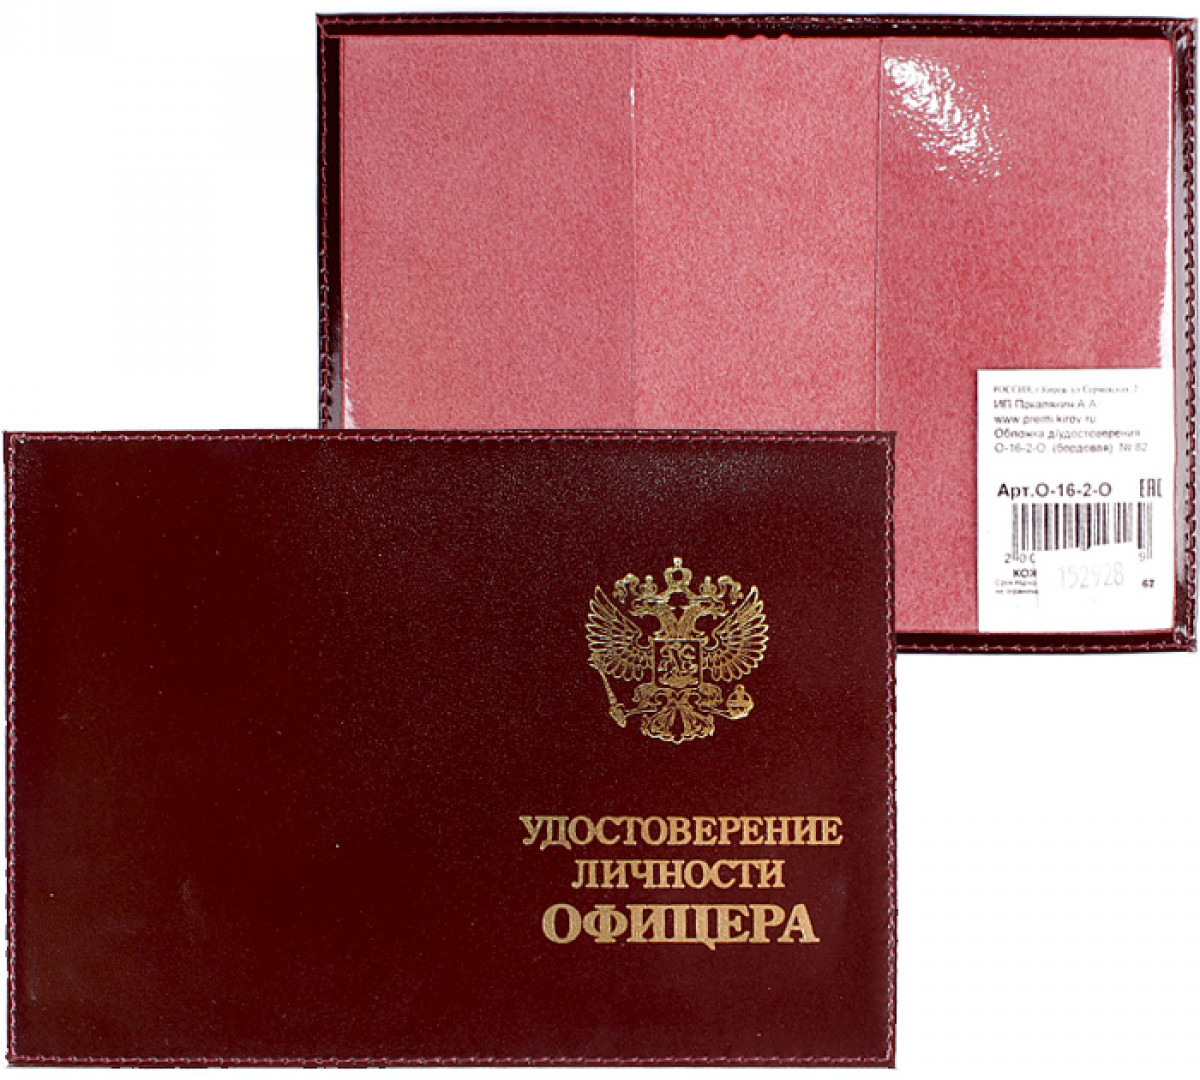 Обложка для удостоверения Premier, цвет: бордовый. 152928